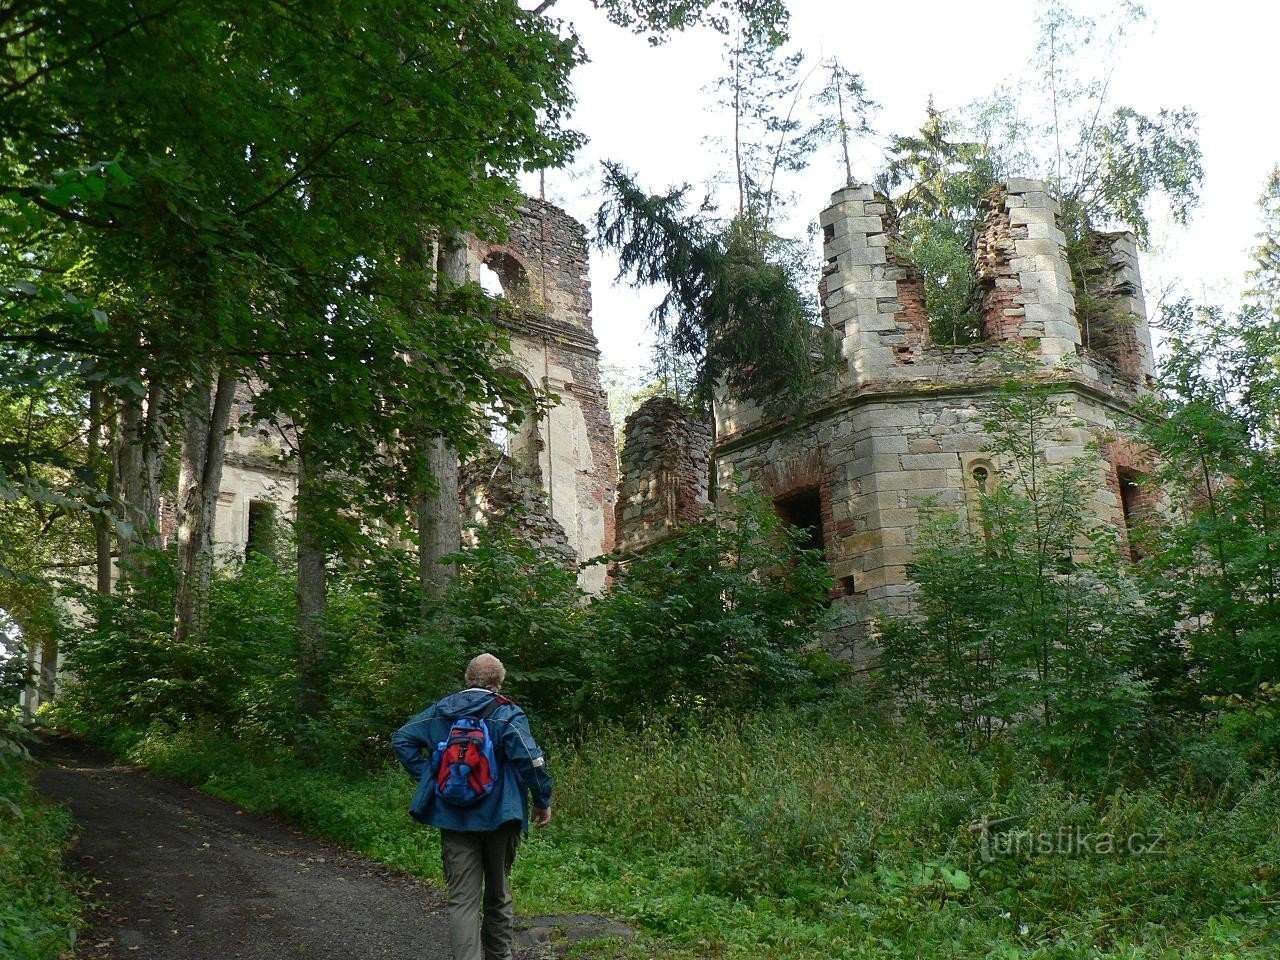 Saint, en del af et ruineret kloster